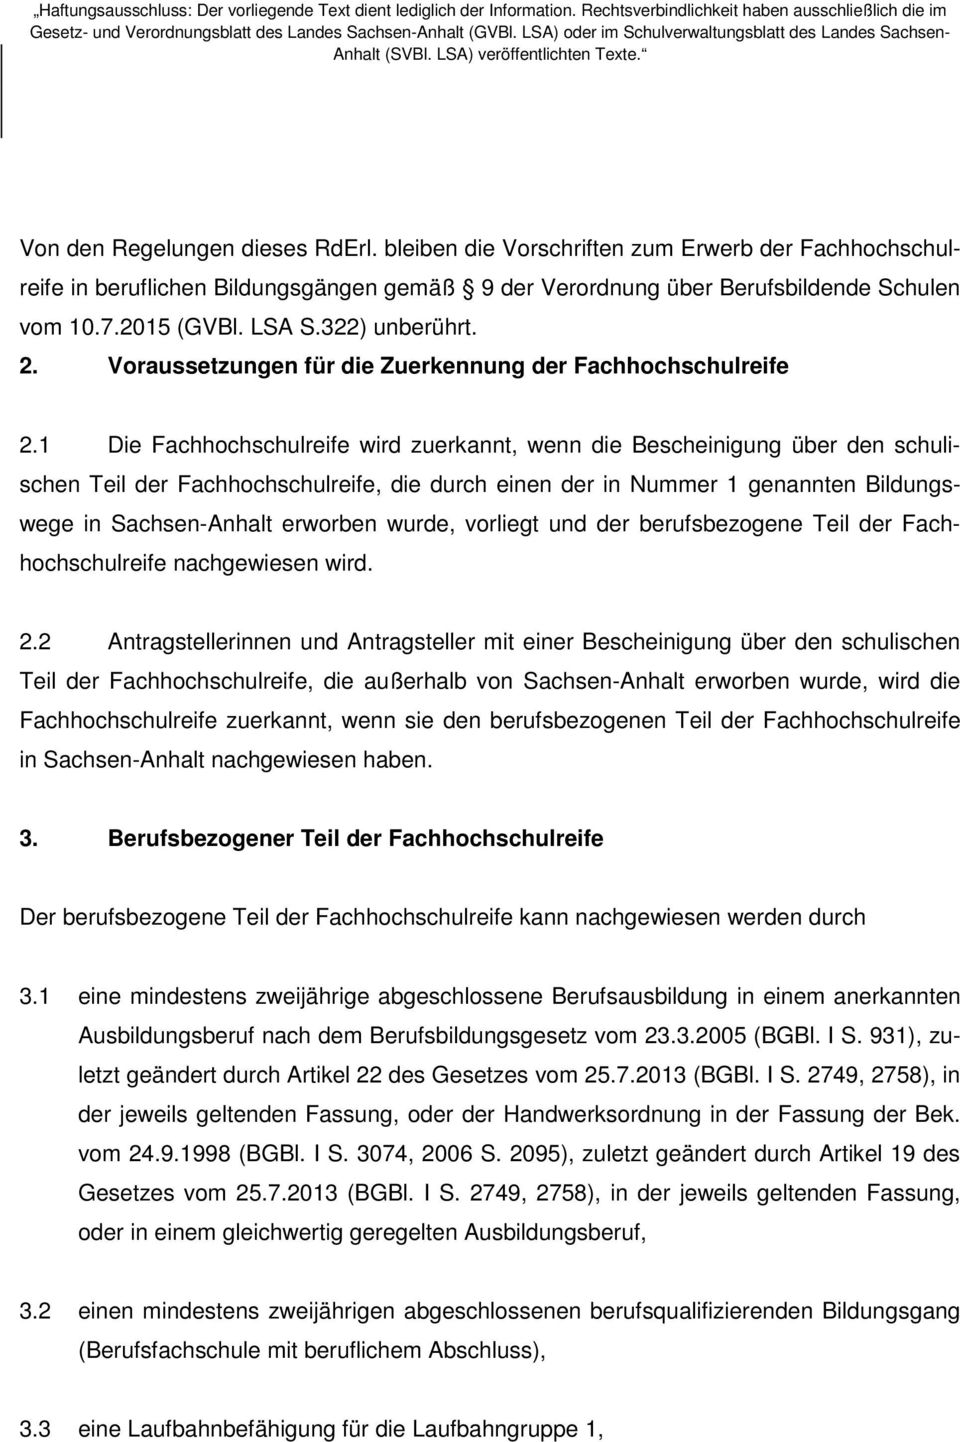 1 Die Fachhochschulreife wird zuerkannt, wenn die Bescheinigung über den schulischen Teil der Fachhochschulreife, die durch einen der in Nummer 1 genannten Bildungswege in Sachsen-Anhalt erworben